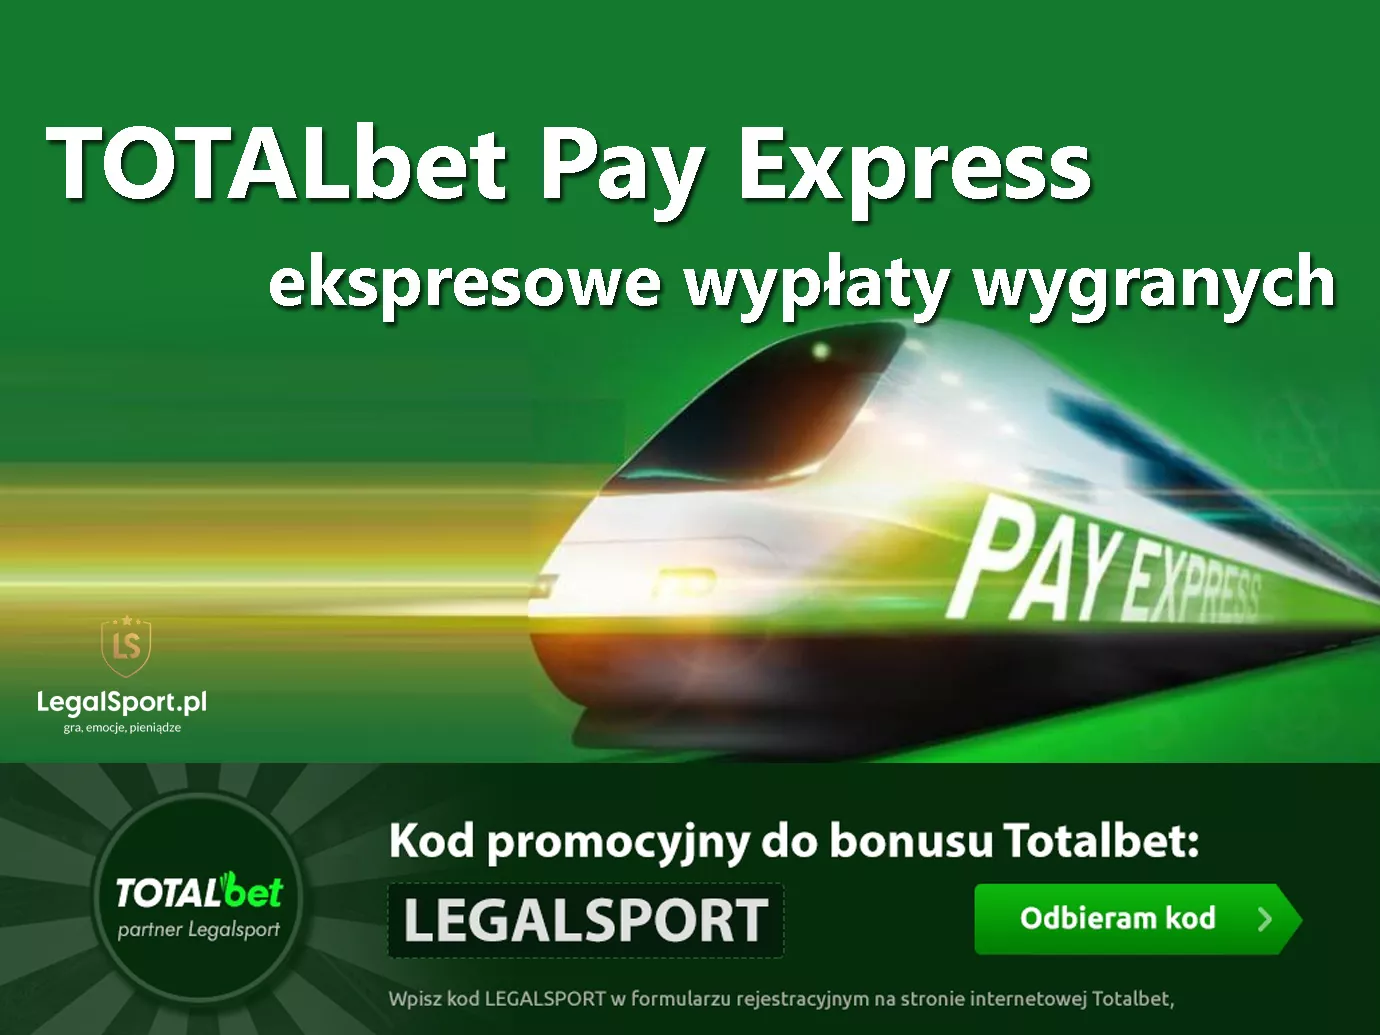 Pay Express - ekspresowe wypÅ‚aty w TOTALbet